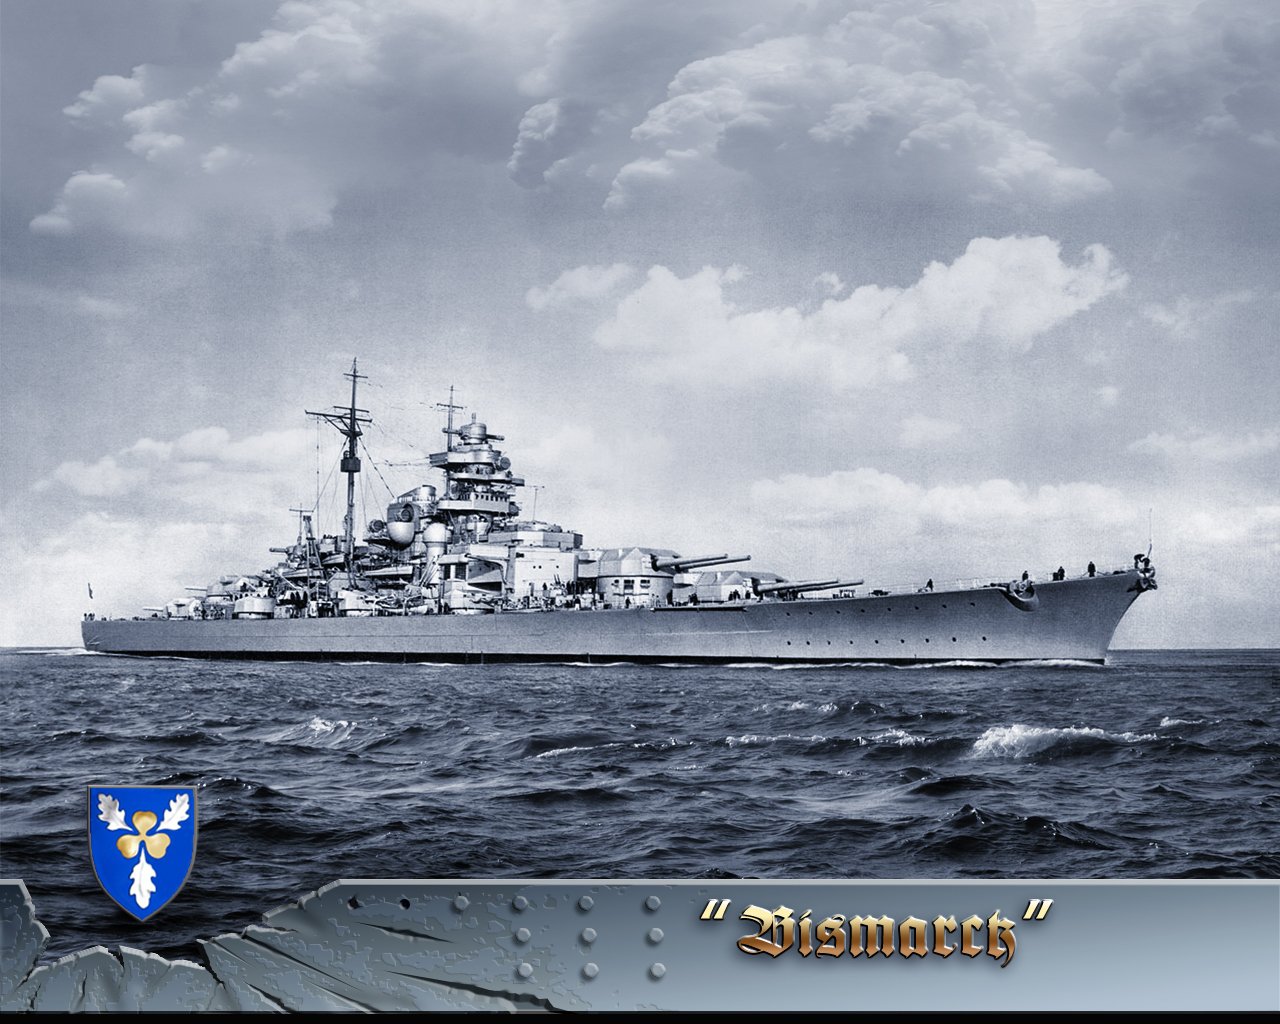 Battleship Bismarck wallpaper   ForWallpapercom